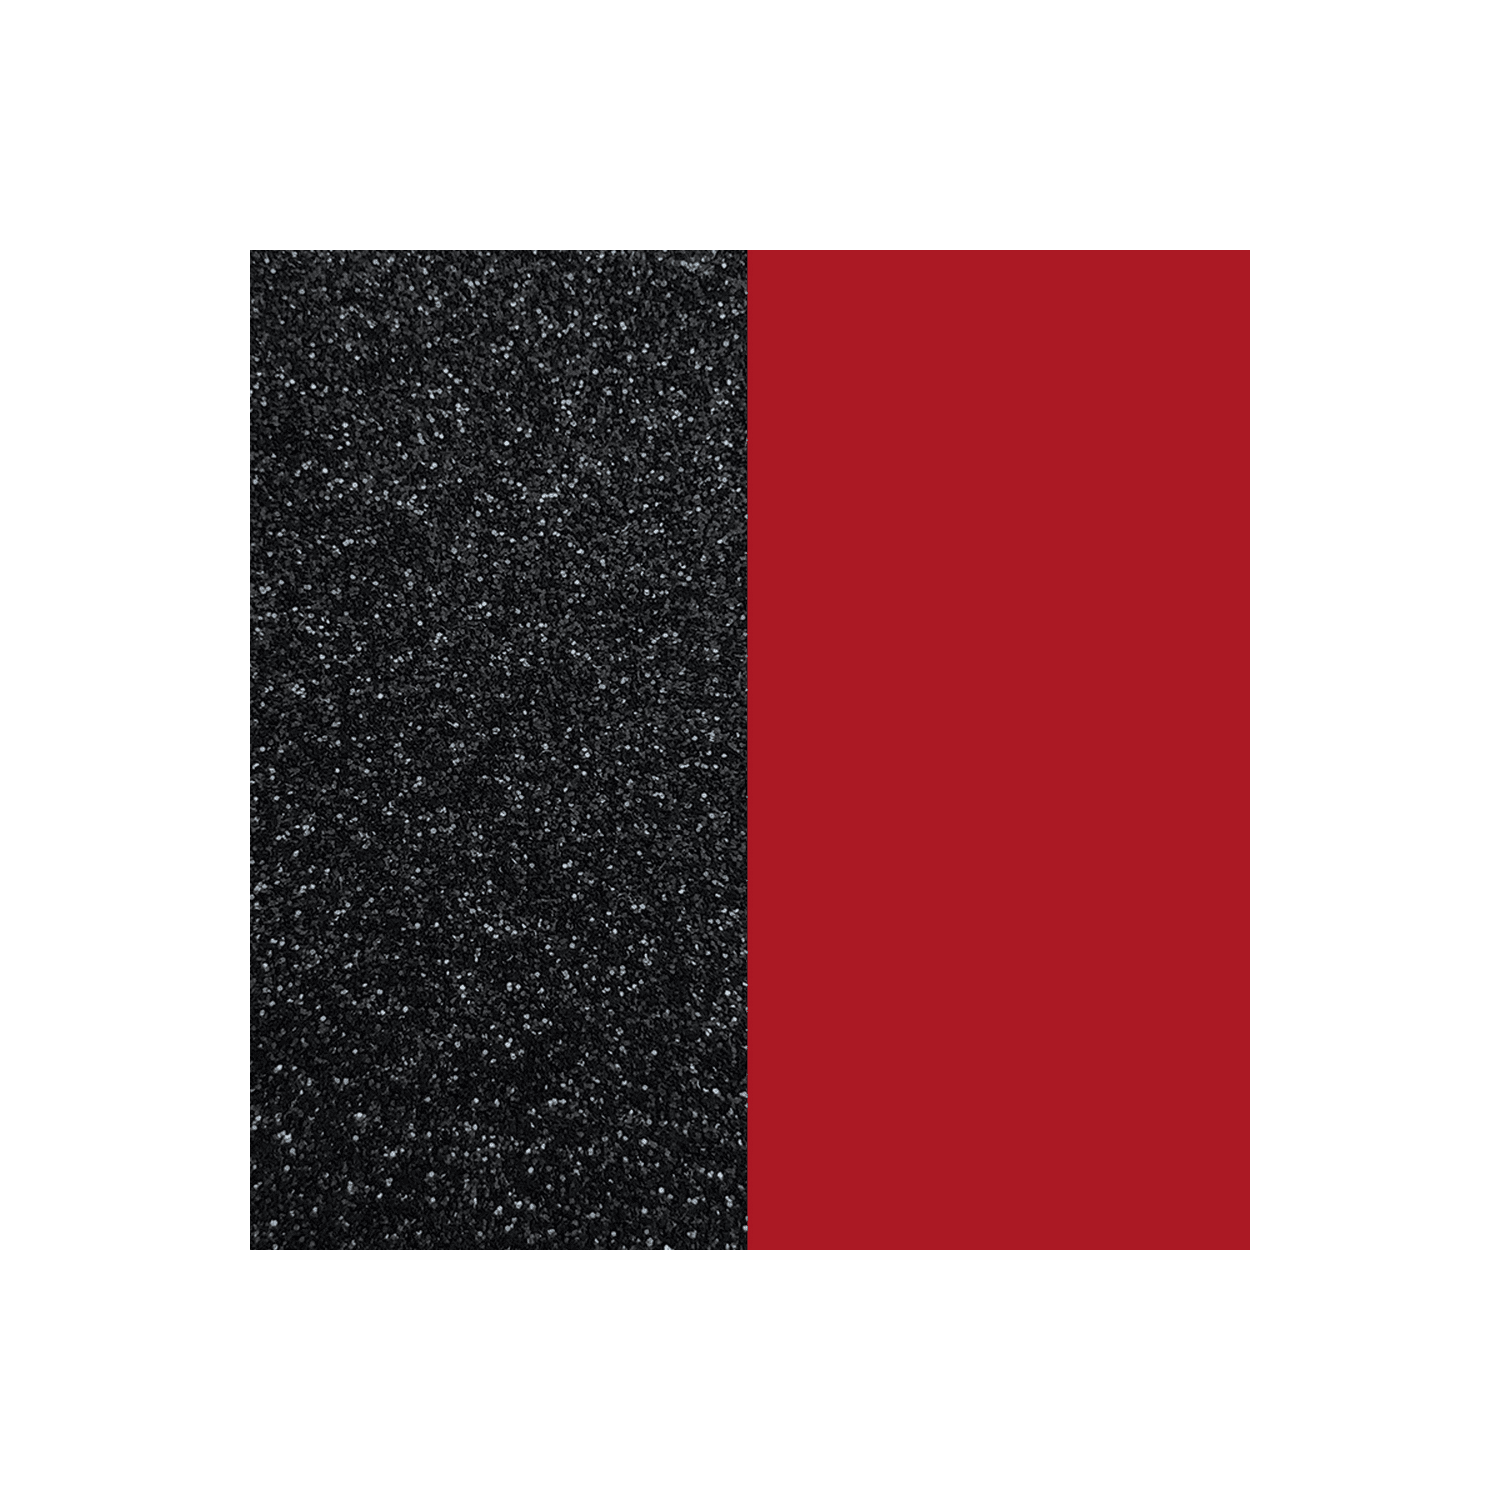 Vinyle Bague Les Georgettes 12mm
Paillettes noires/ Rouge